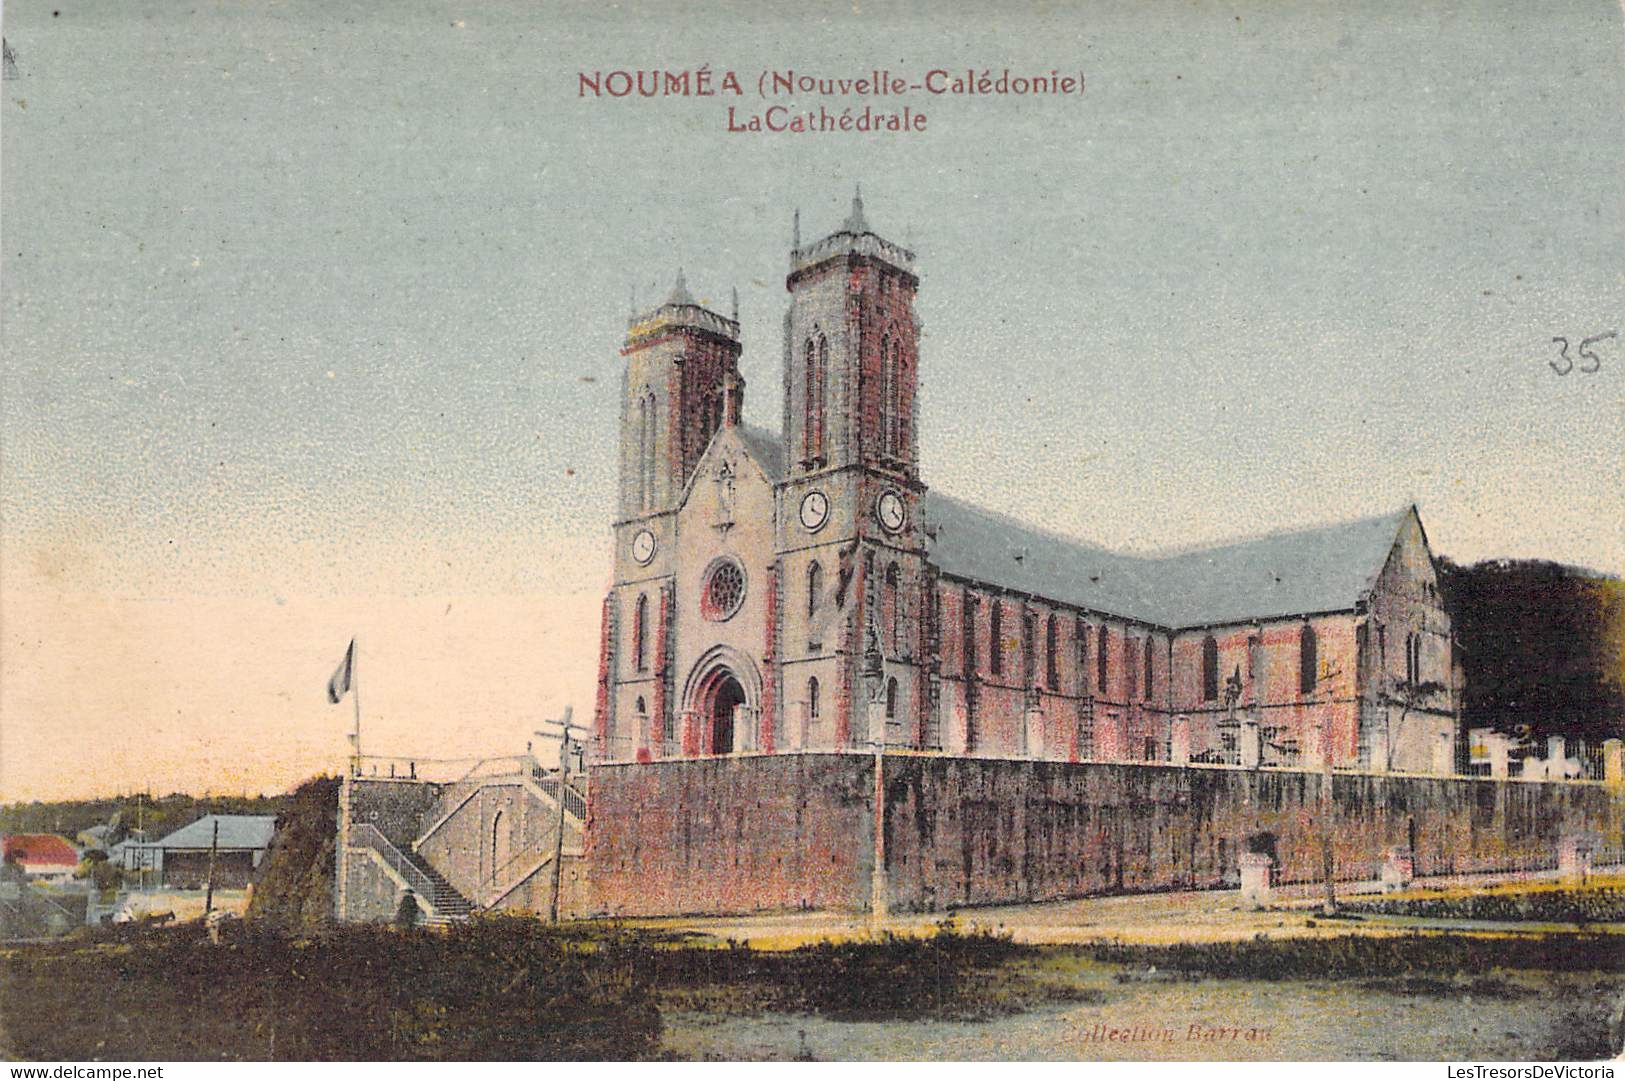 Nouvelle Calédonie - Nouméa - La Cathédrale - Clocher - Horloge - Colorisé - Carte Postale Ancienne - New Caledonia